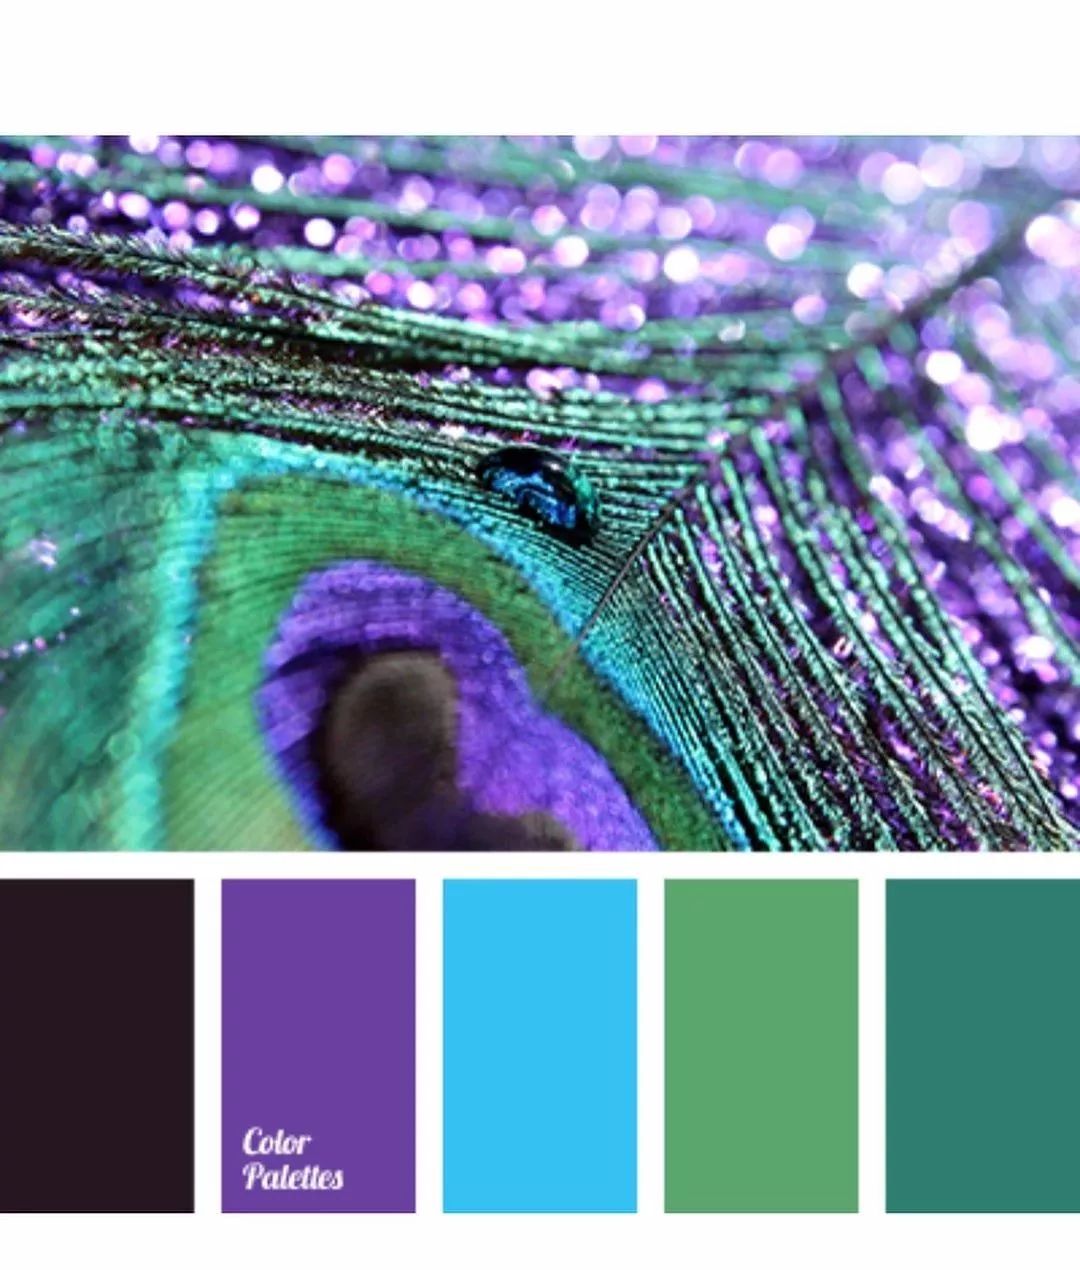 色彩| 孔雀绿,孔雀蓝,孔雀紫,漂亮的孔雀色颜色搭配